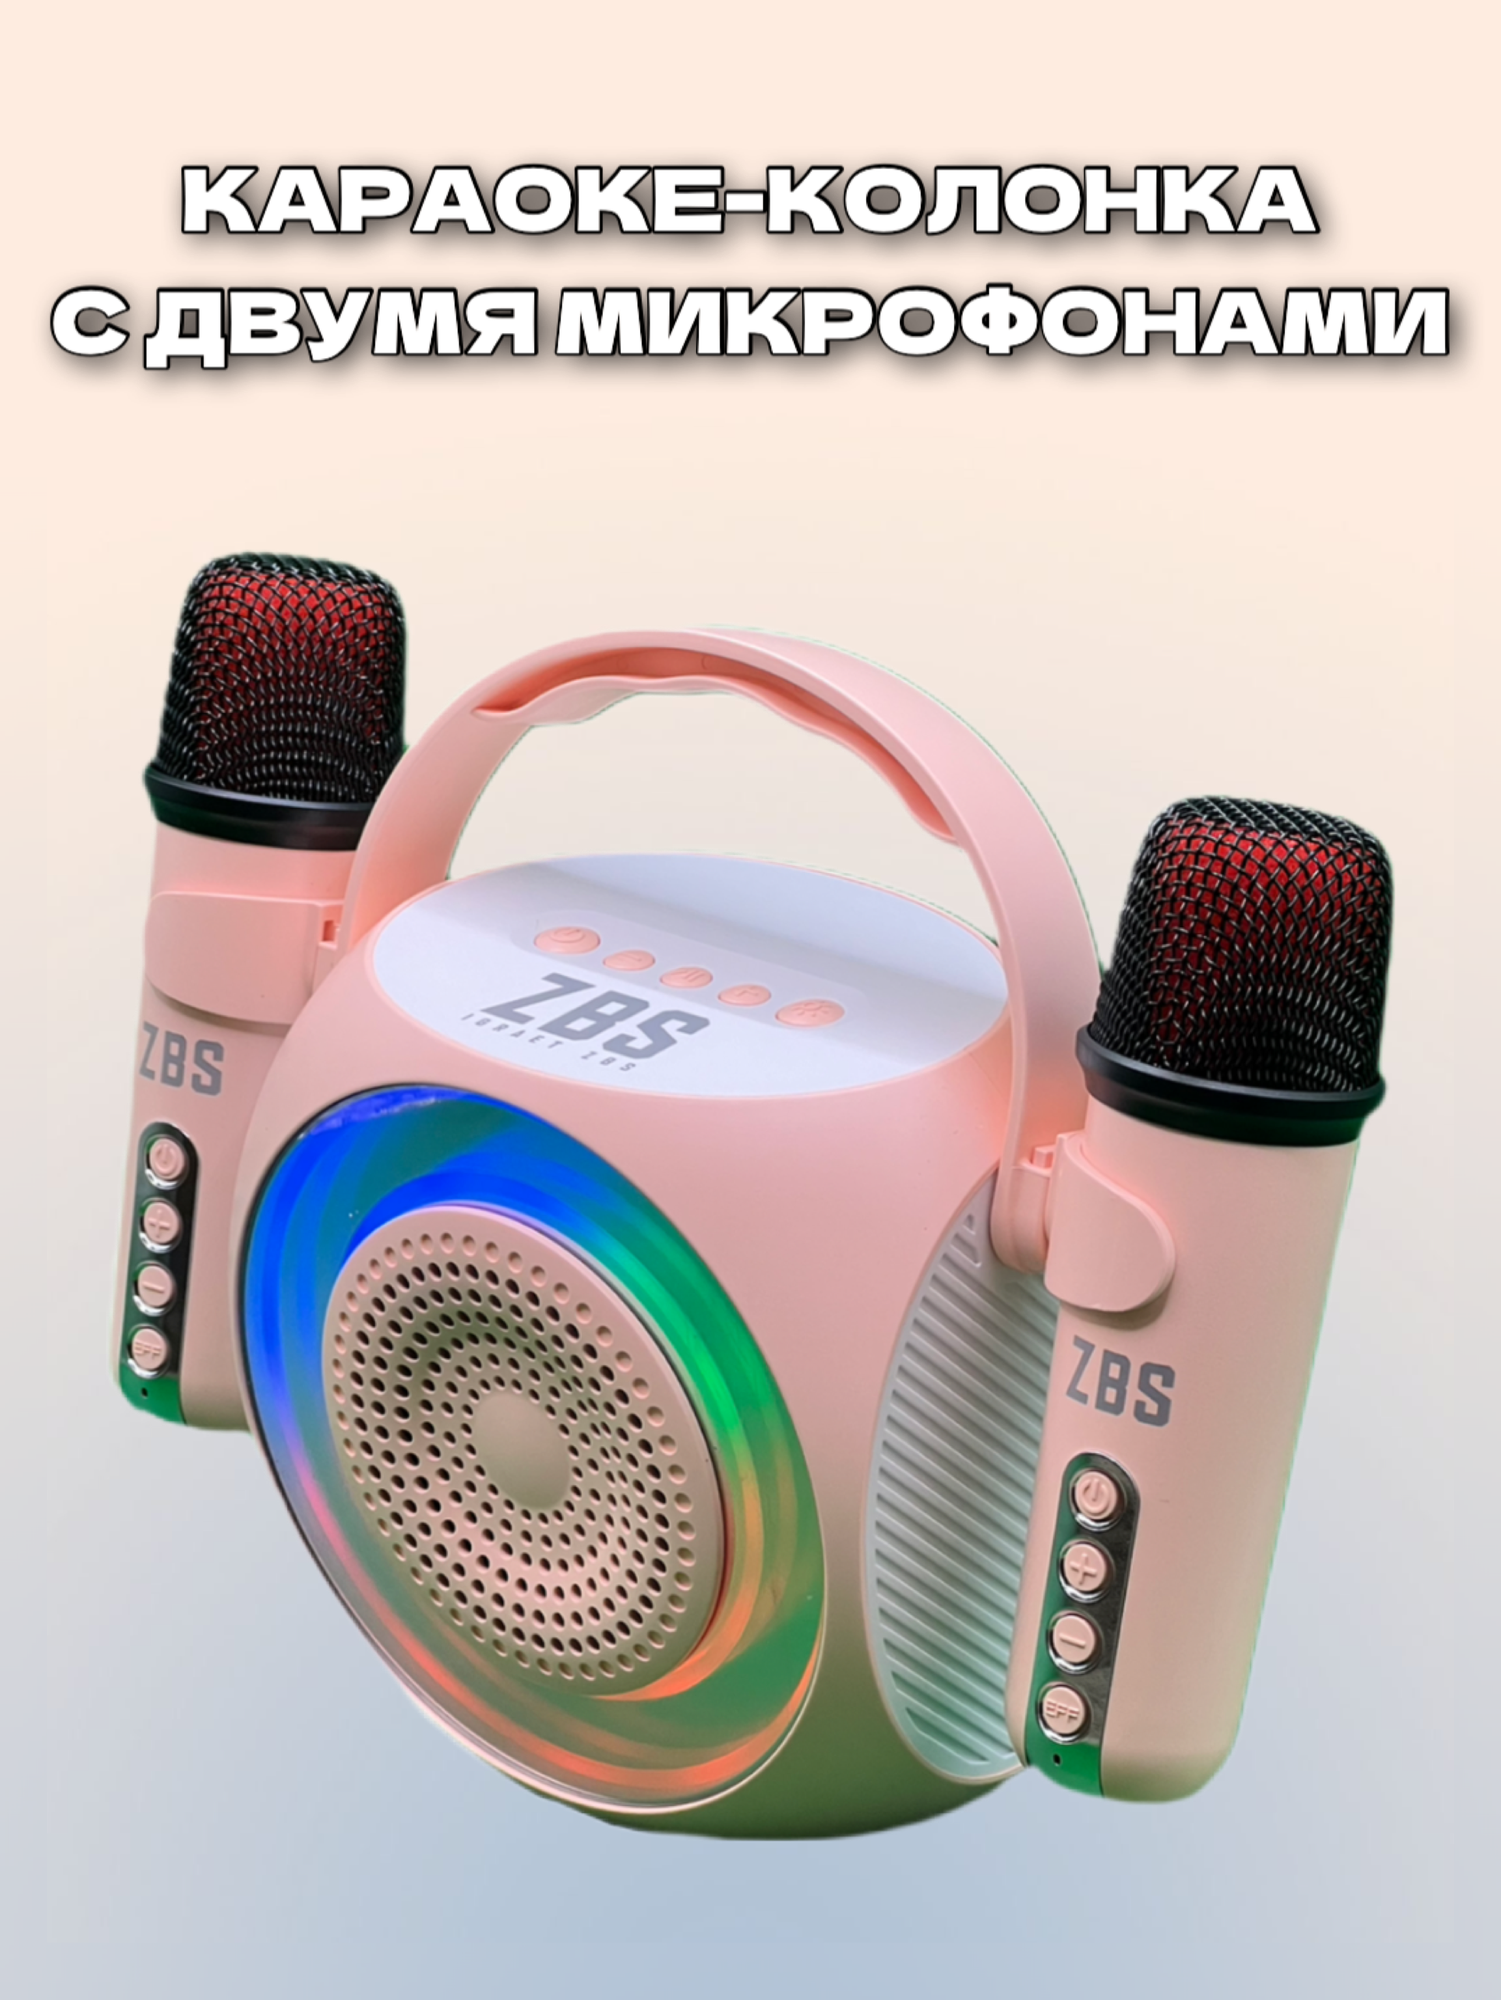 Беспроводная караоке-система ZBS с двумя микрофонами